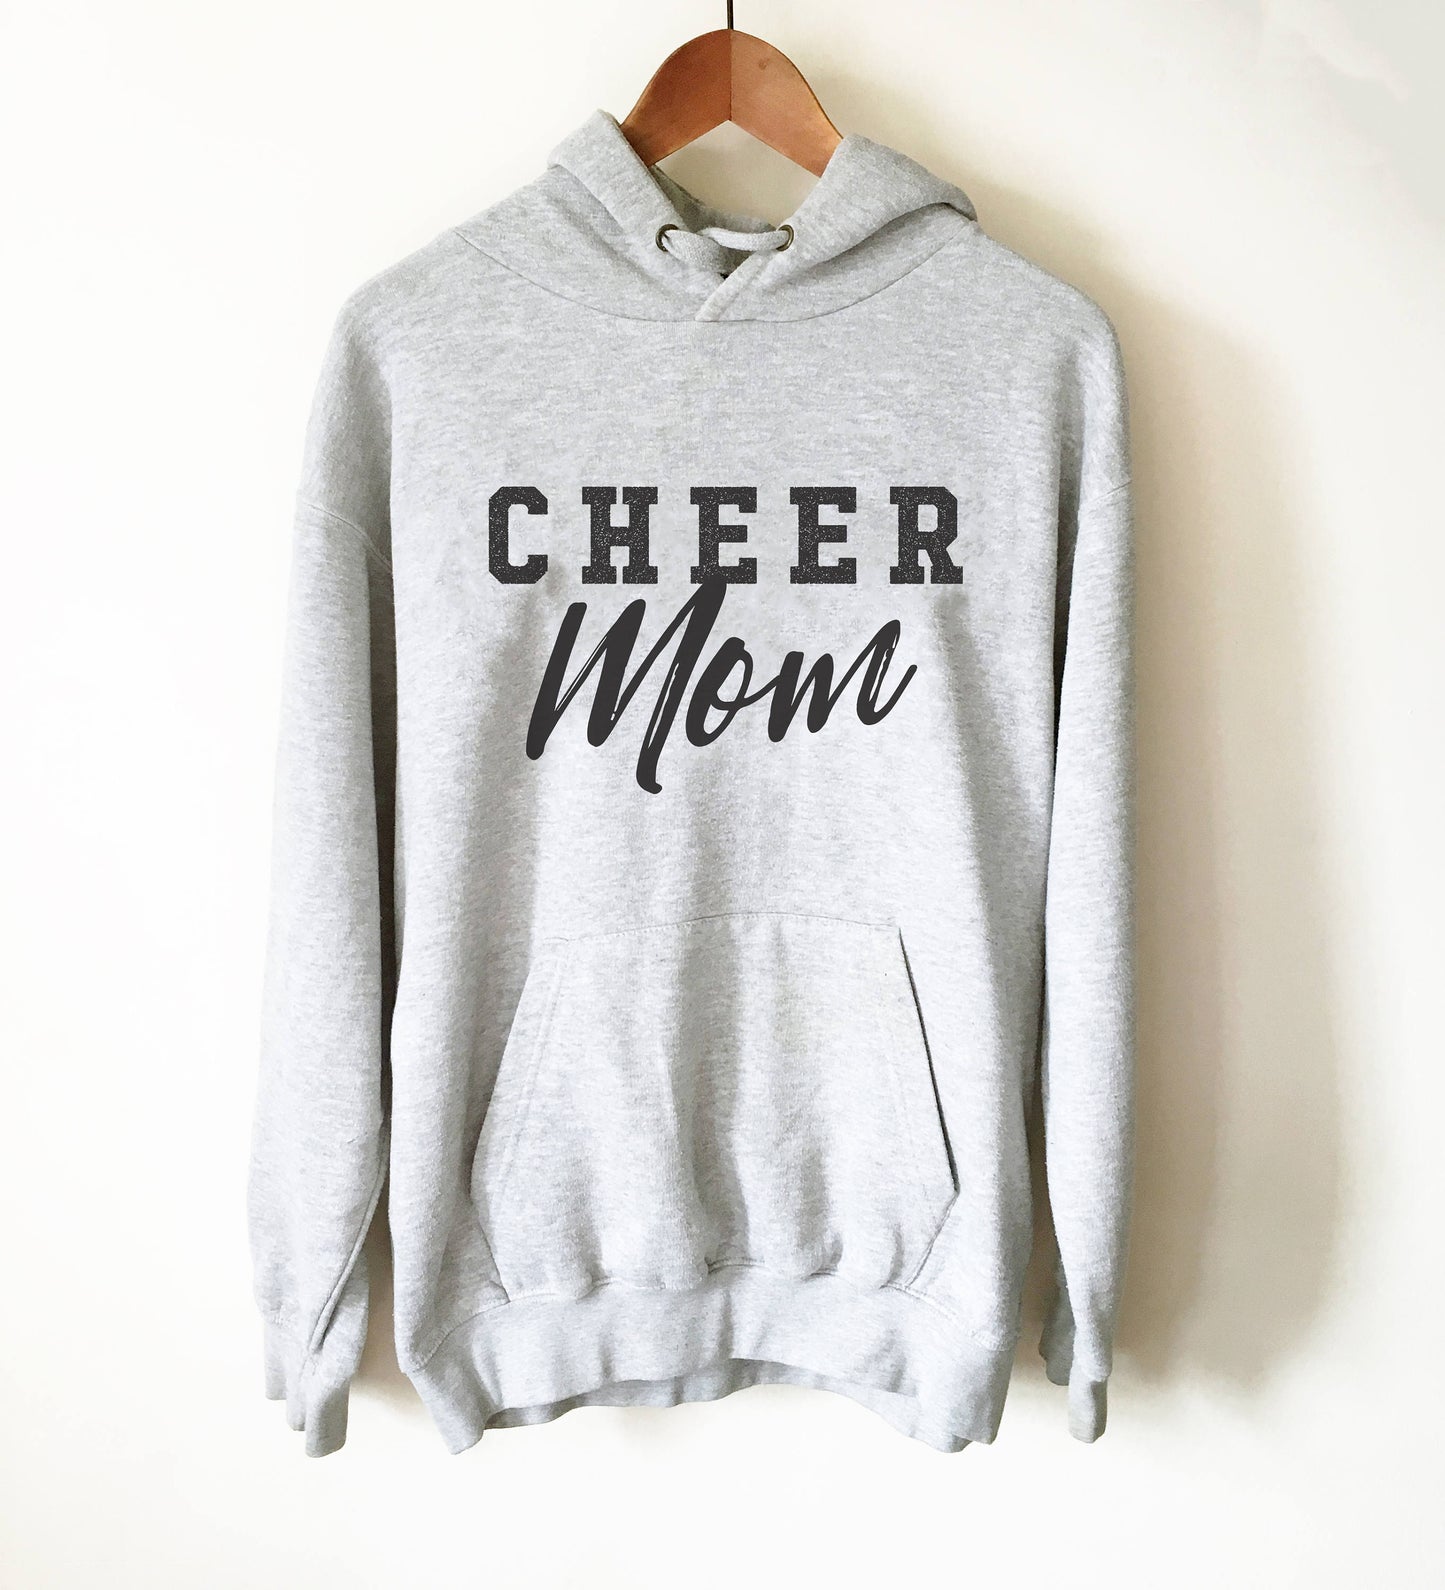 Cheer Mom Hoodie - Cheerleader Hoodie, Cheer Mom Hoodie, Cheer Coach Shirt, Cheerleading Gift, Cheer Mom Shirt, Cheerleading Shirt